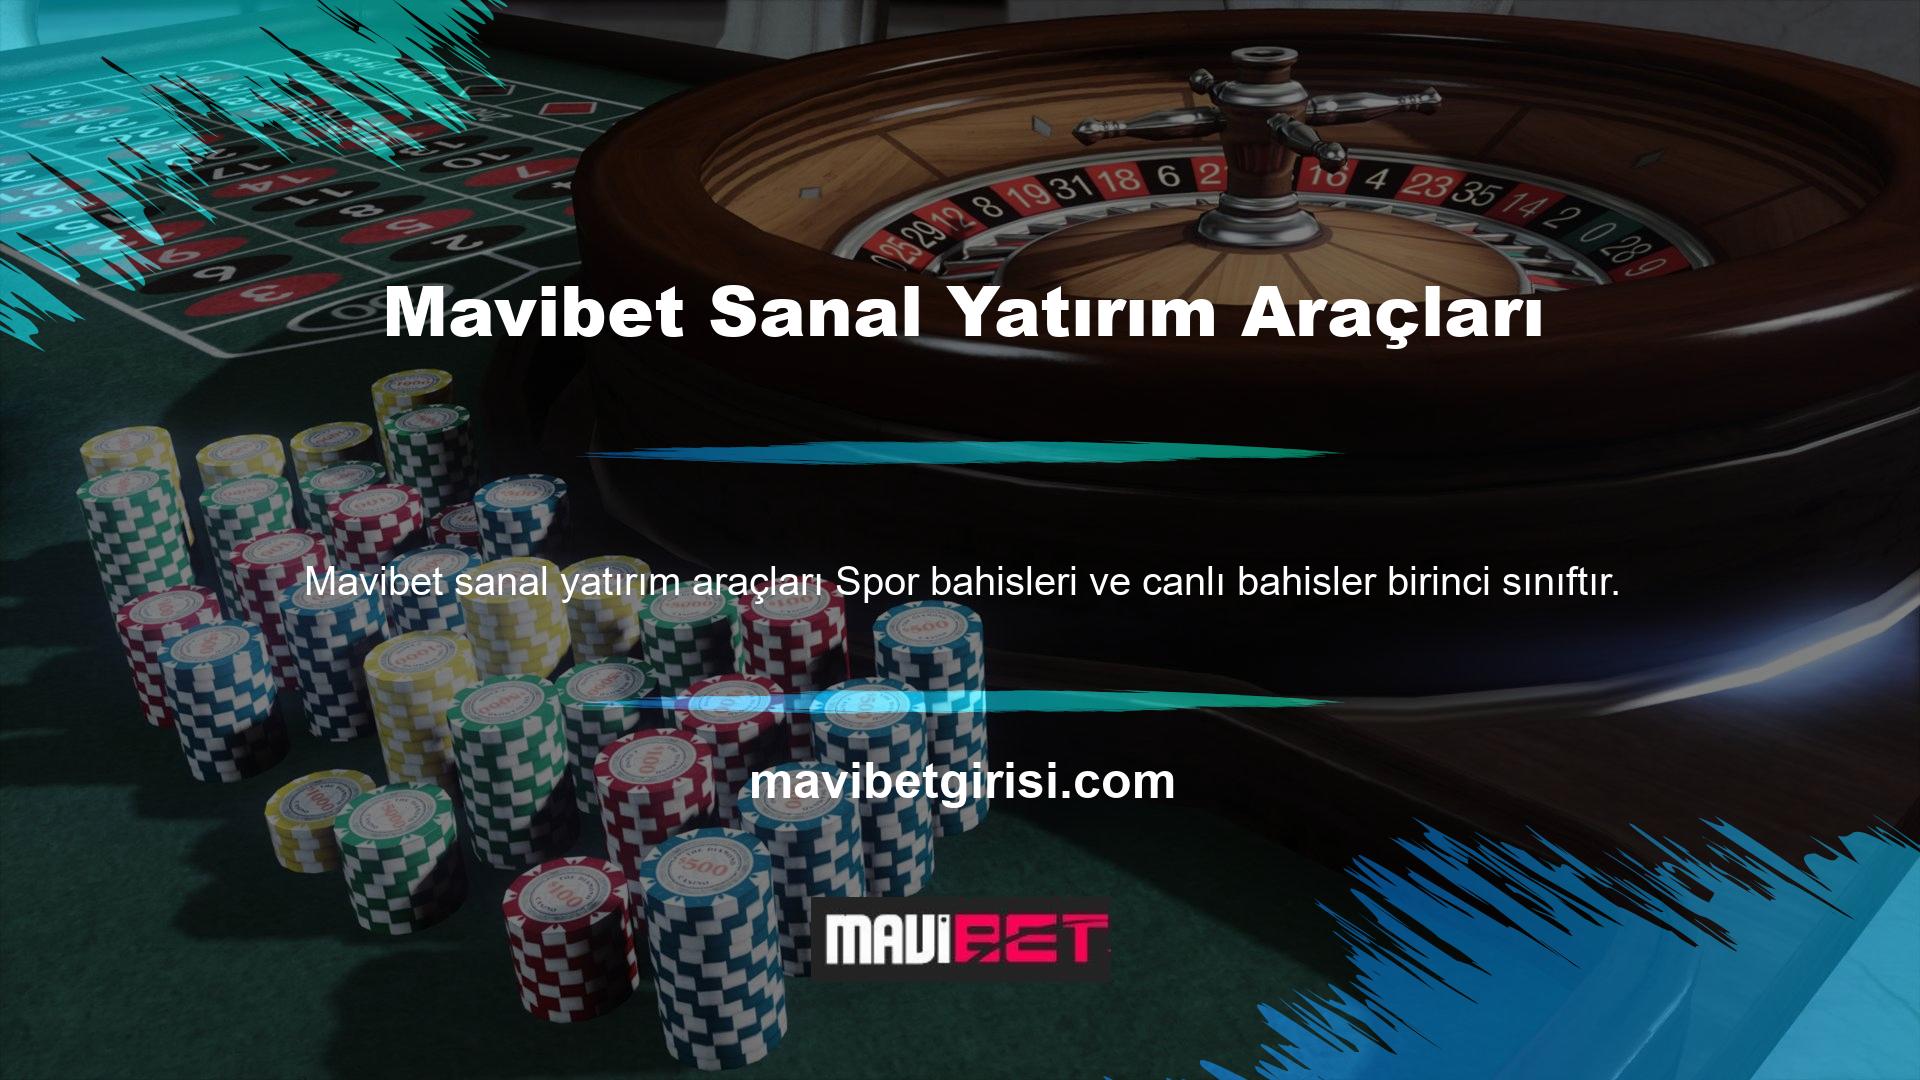 Mavibet Casino'daki mobil oyunlar sitede büyük bir yer tutmaktadır